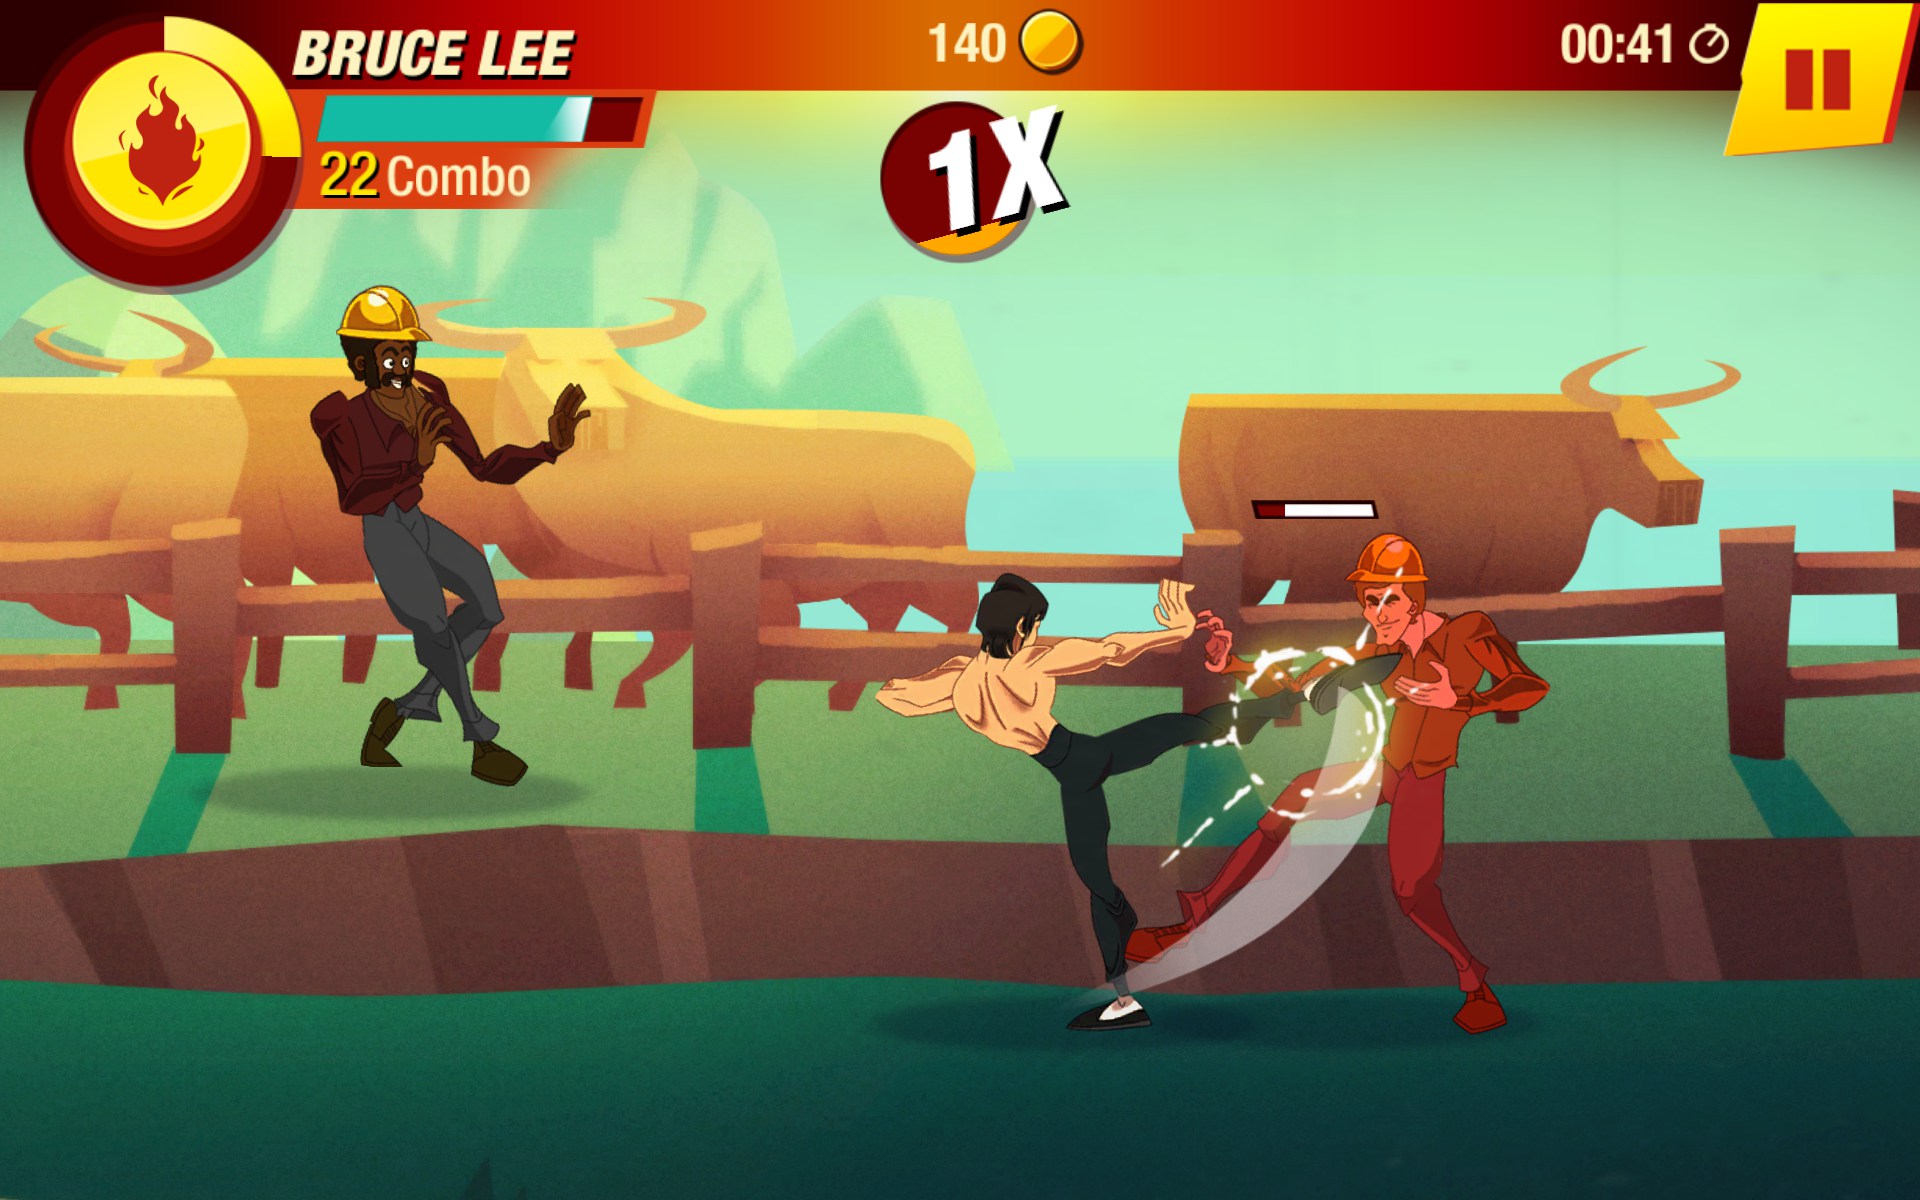 Bruce Lee ezilenlerin yardımına mobilde koşuyor